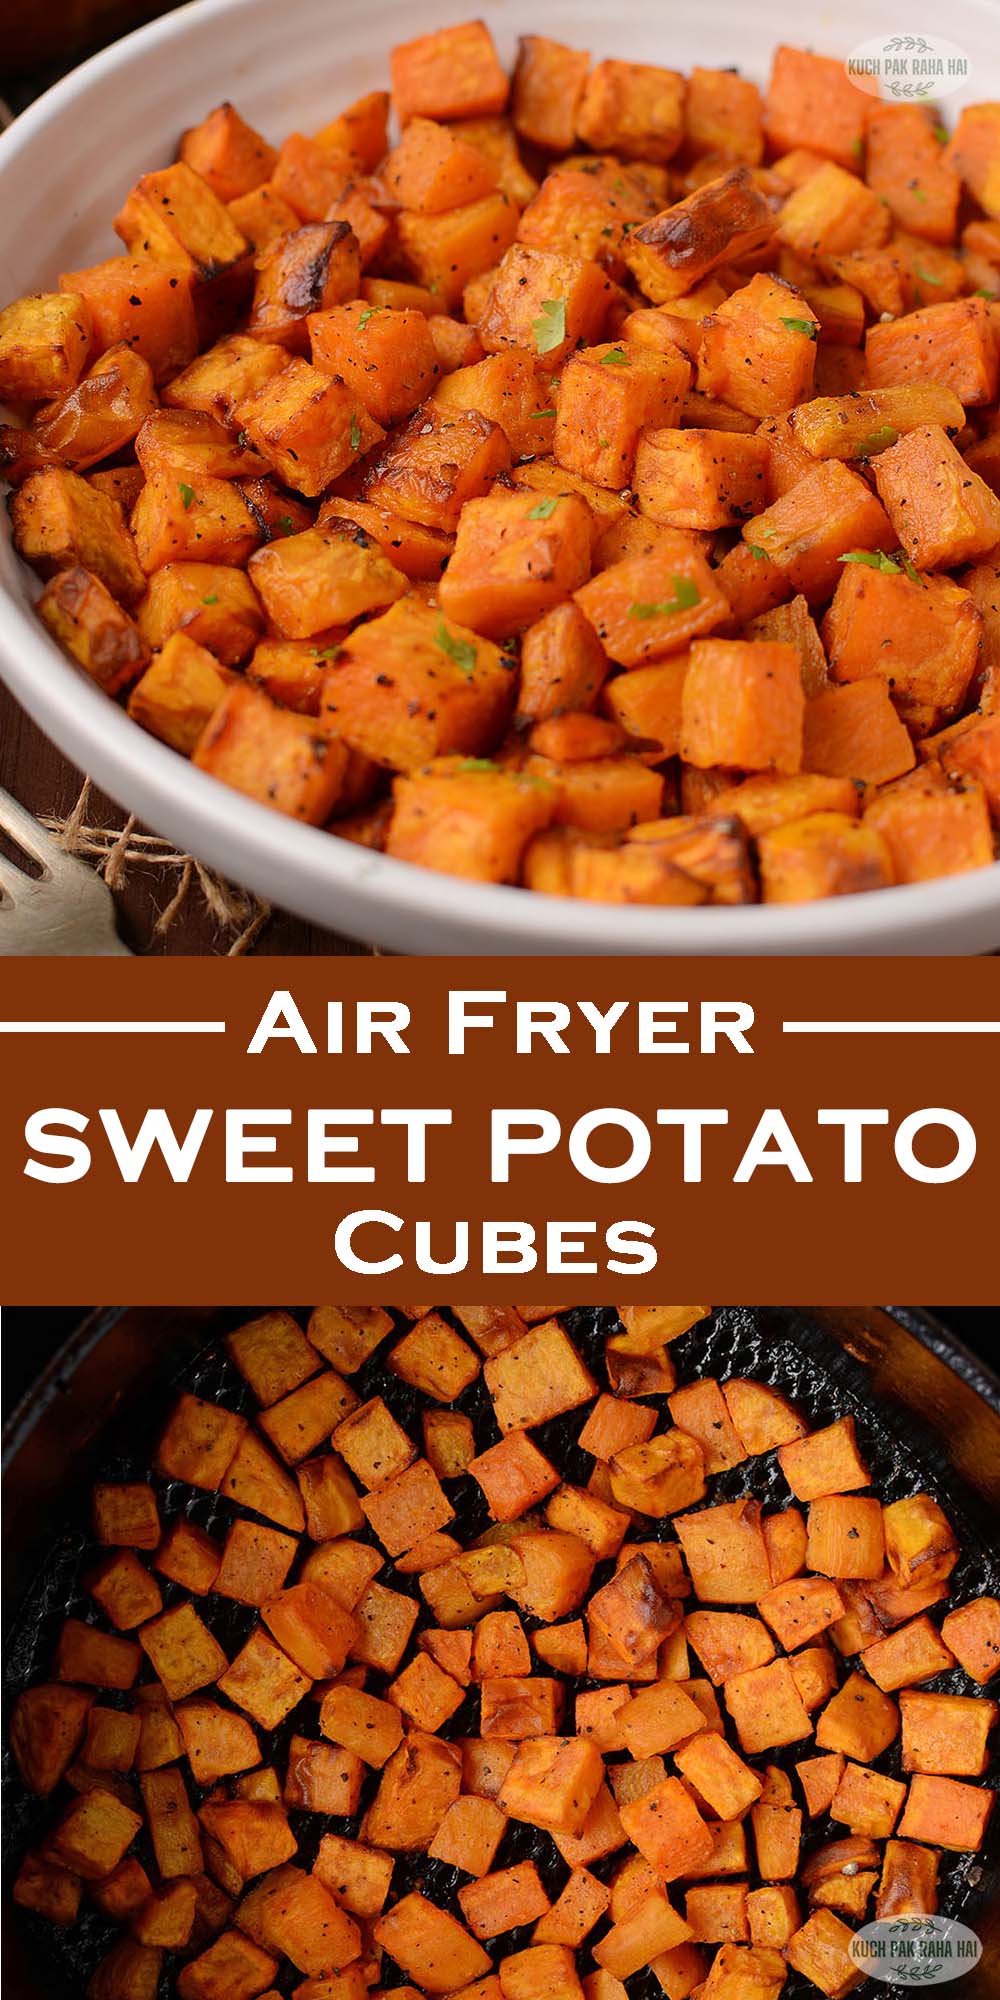 Sweet potatoes in air fryer.